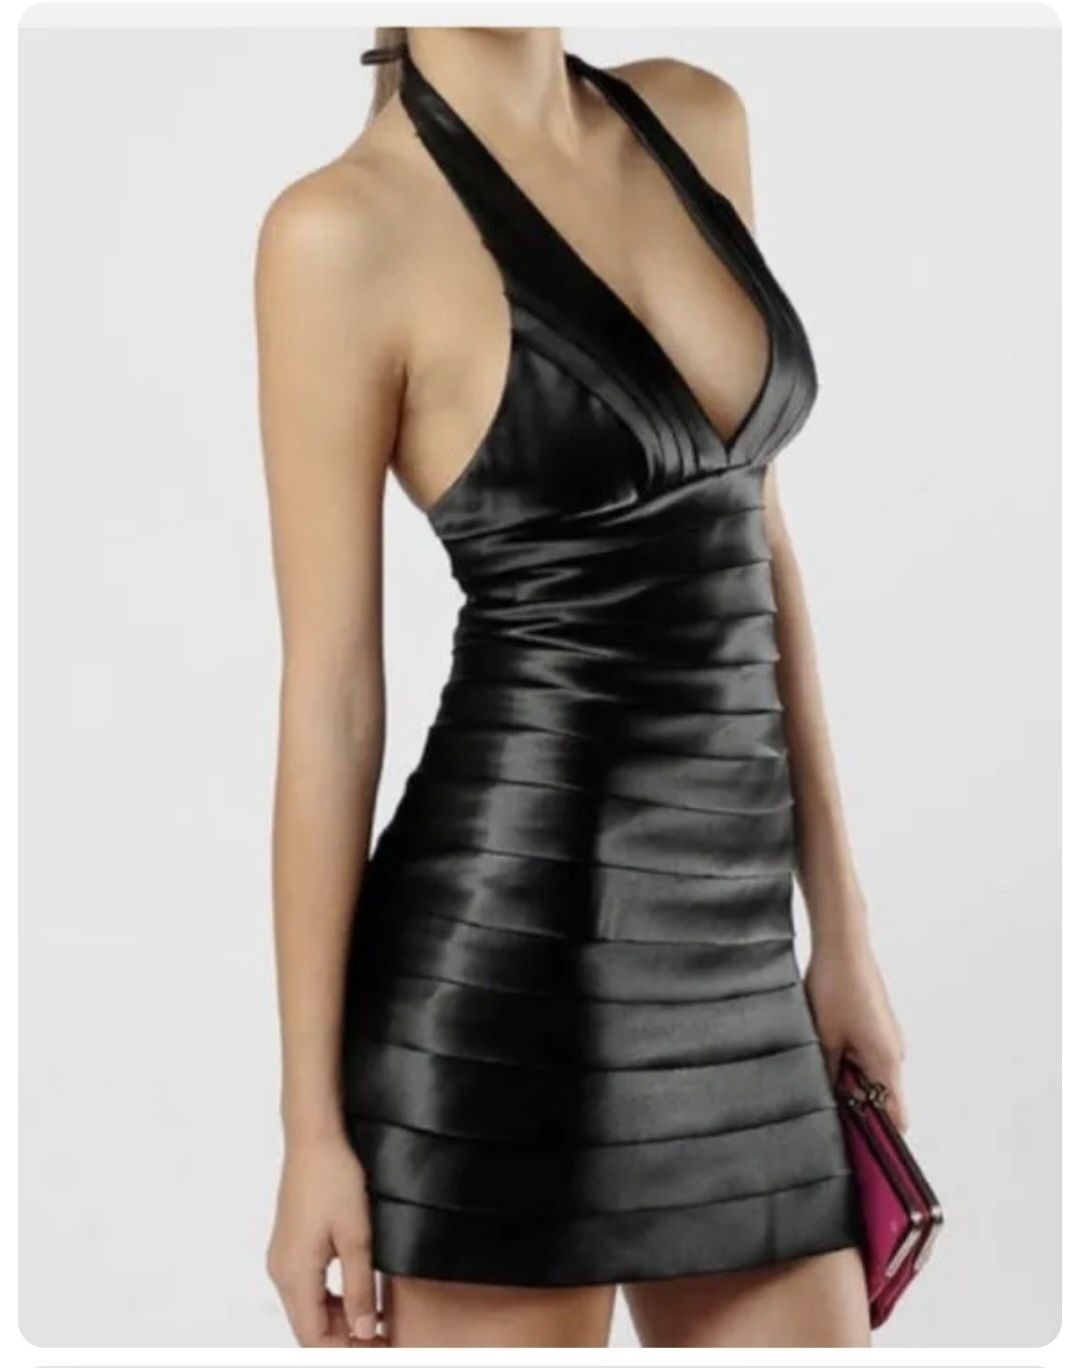 Малка черна рокля дамска сатен 12 С или М
Без следи от употреба